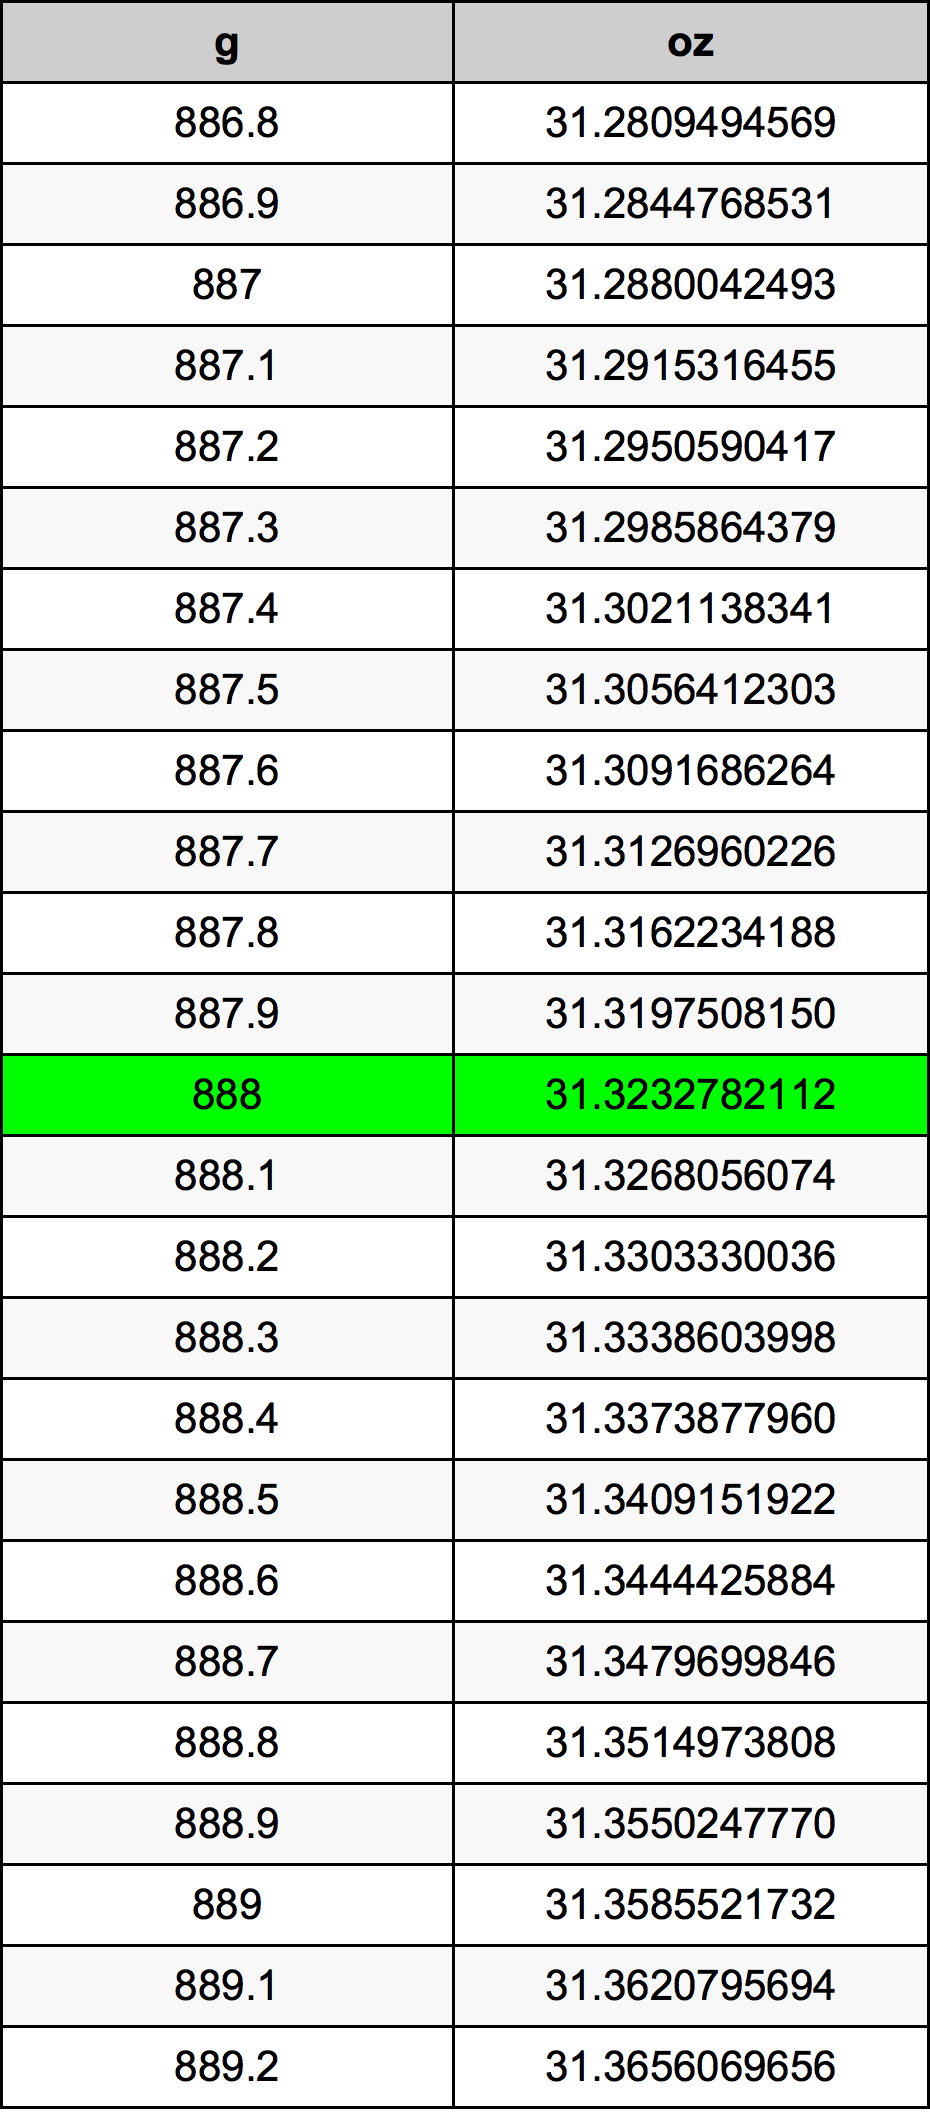 888 Gram konversi tabel